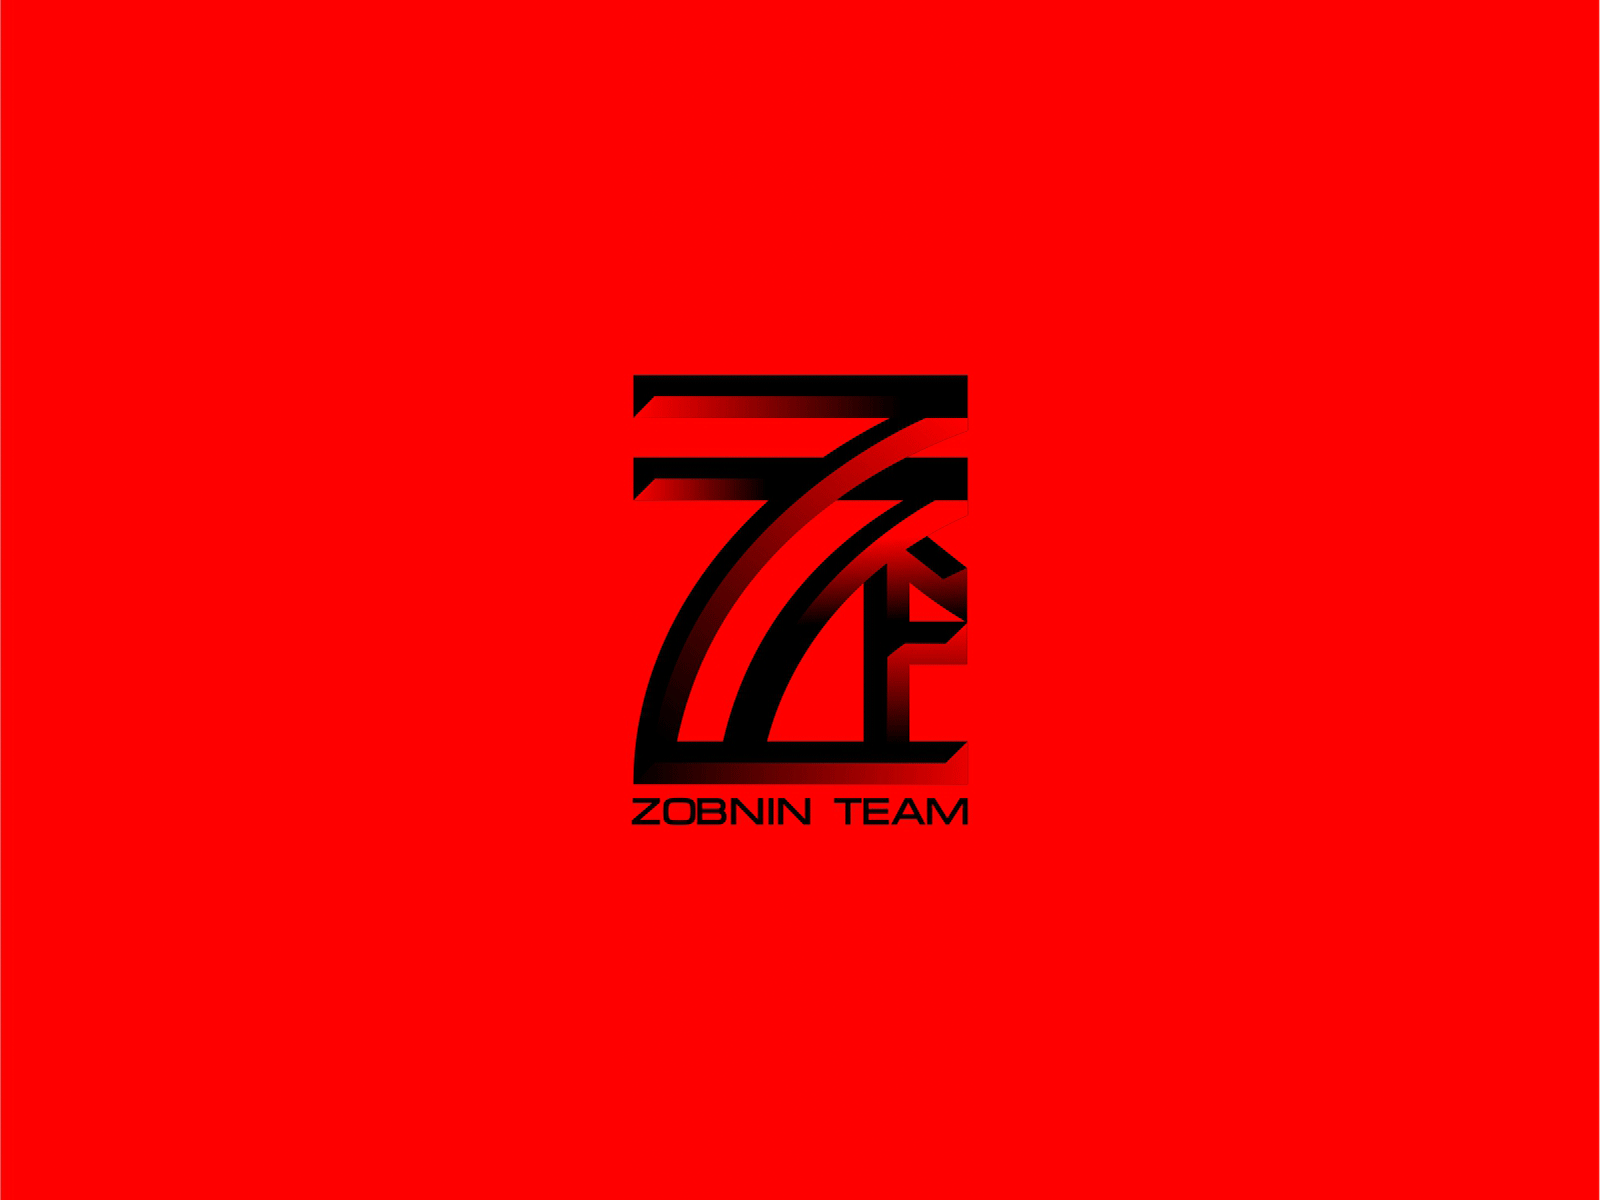 Zobnin team. Football team logo.